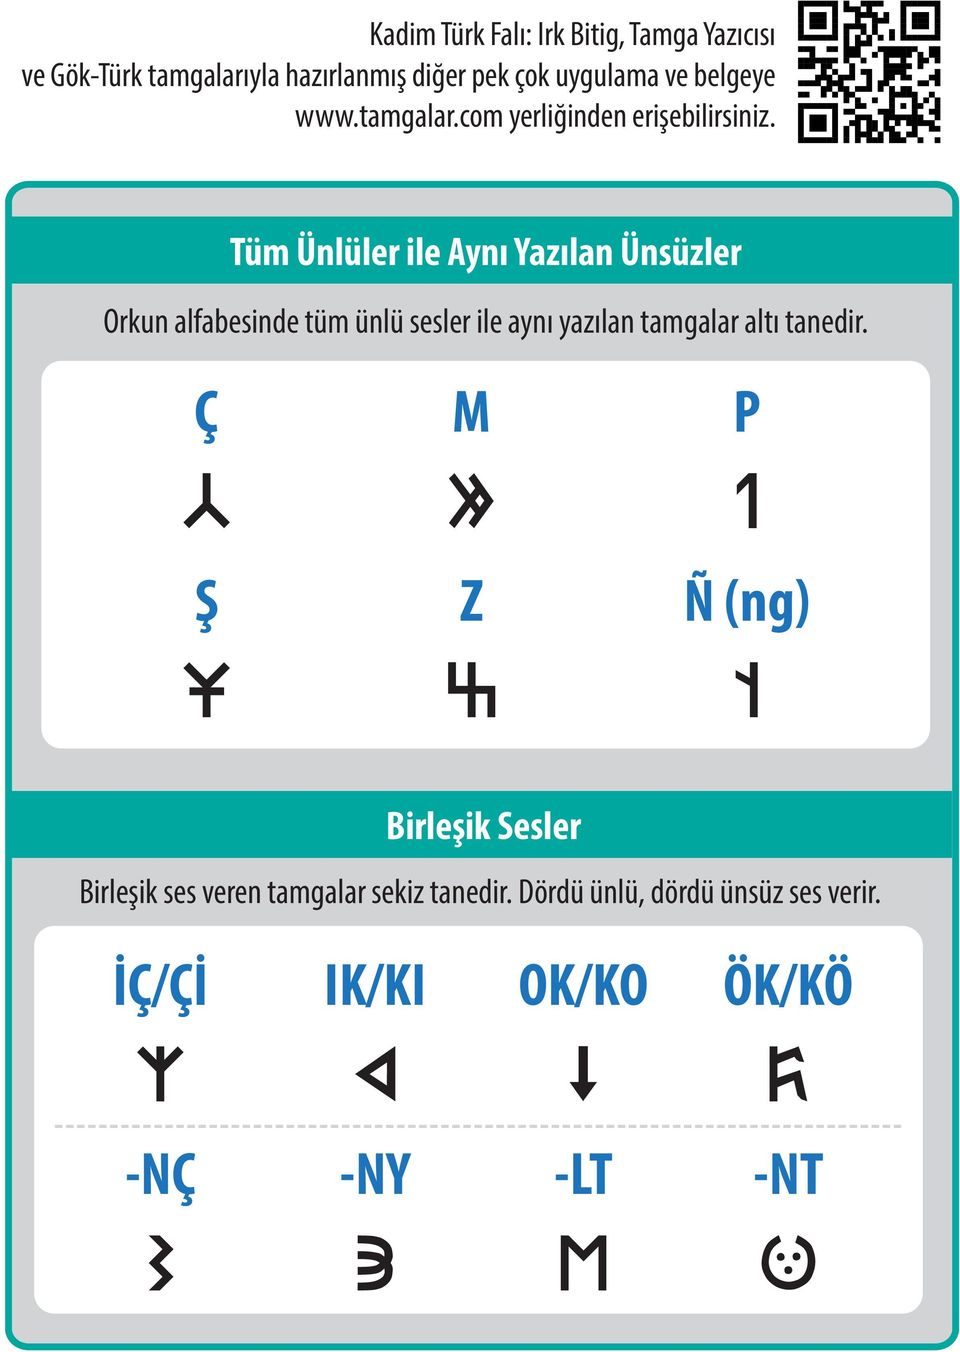 Tüm Ünlüler ile Aynı Yazılan Ünsüzler Orkun alfabesinde tüm ünlü sesler ile aynı yazılan tamgalar altı tanedir.